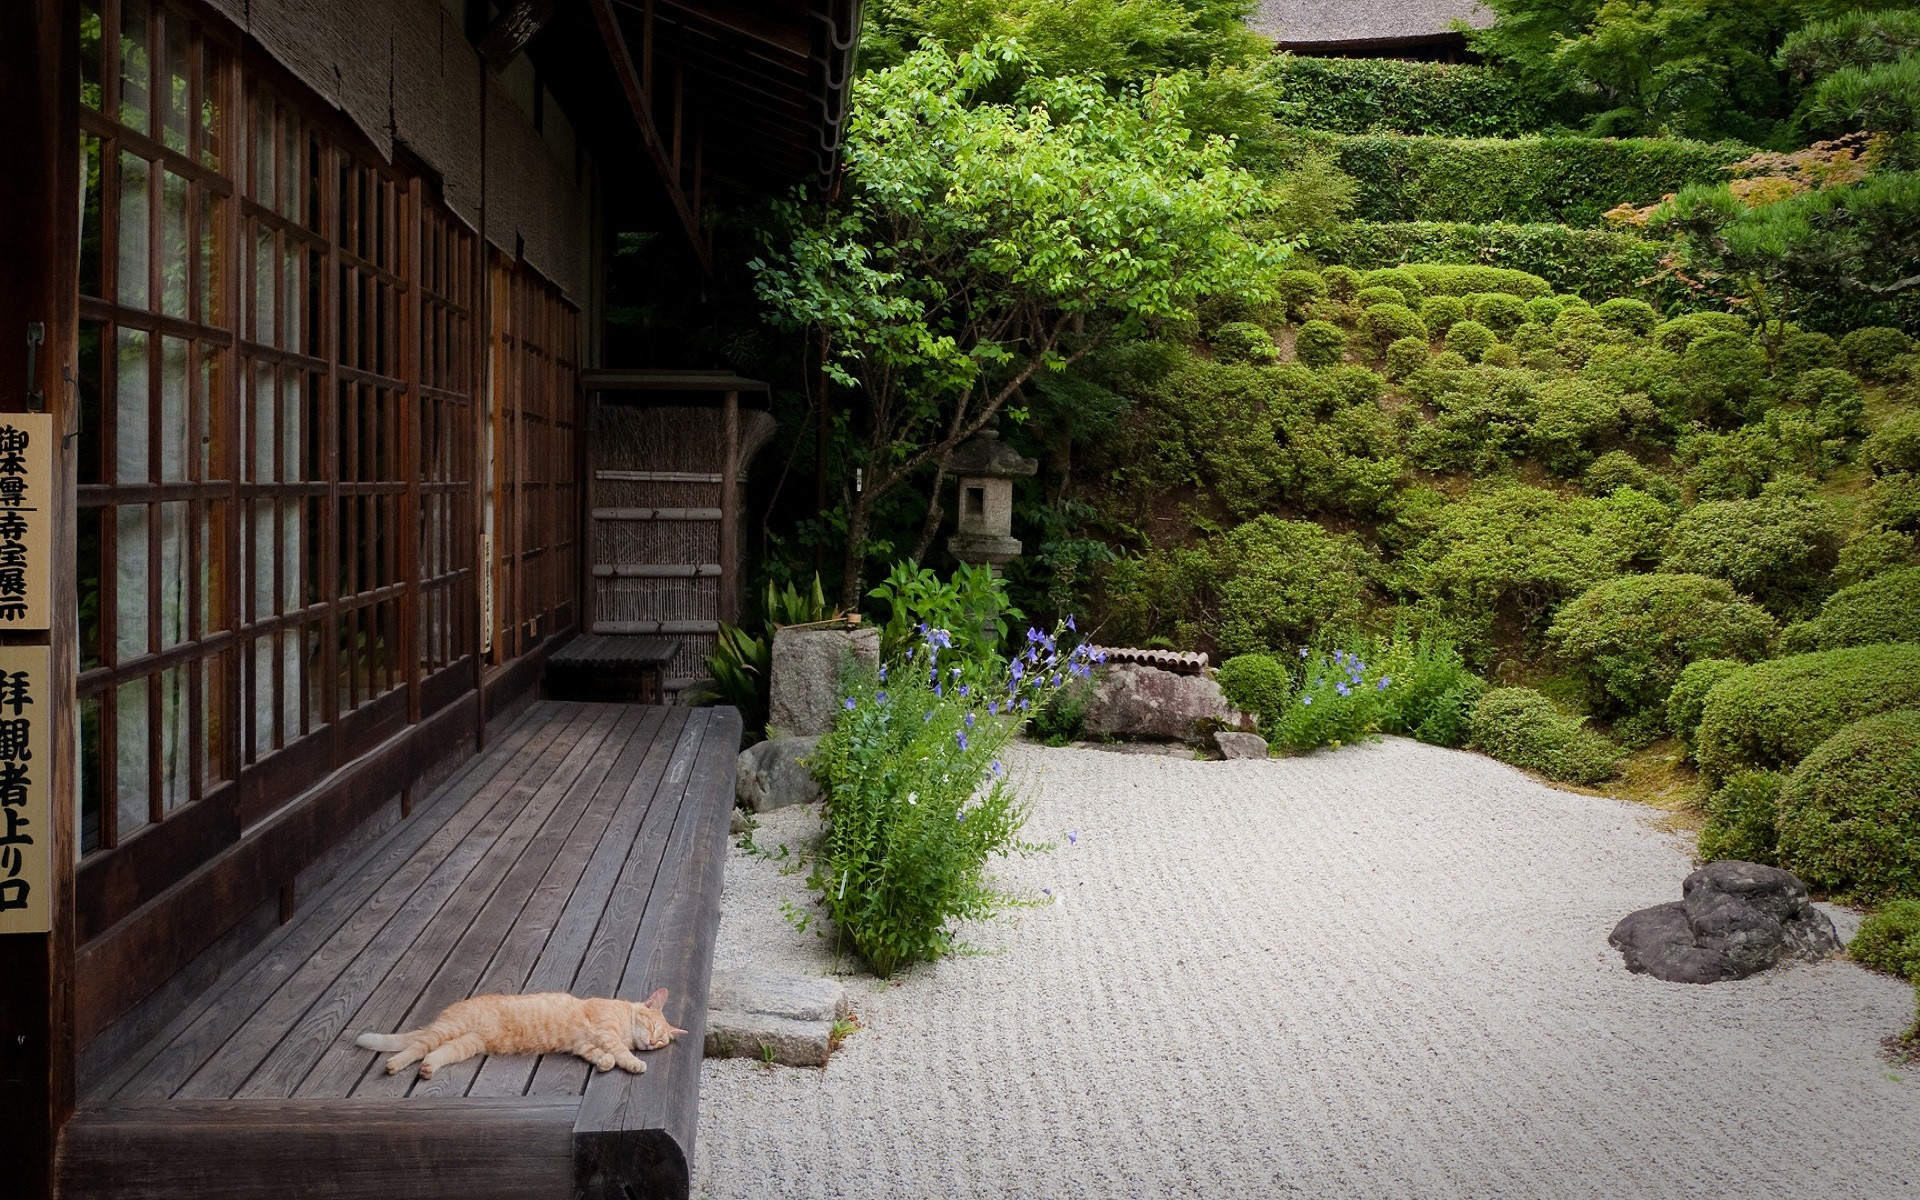 Забронировать столик в японском саду. Японская энгава. Сад камней в Киото. Китайский сад камней внутренний дворик. Сады Киото Япония.